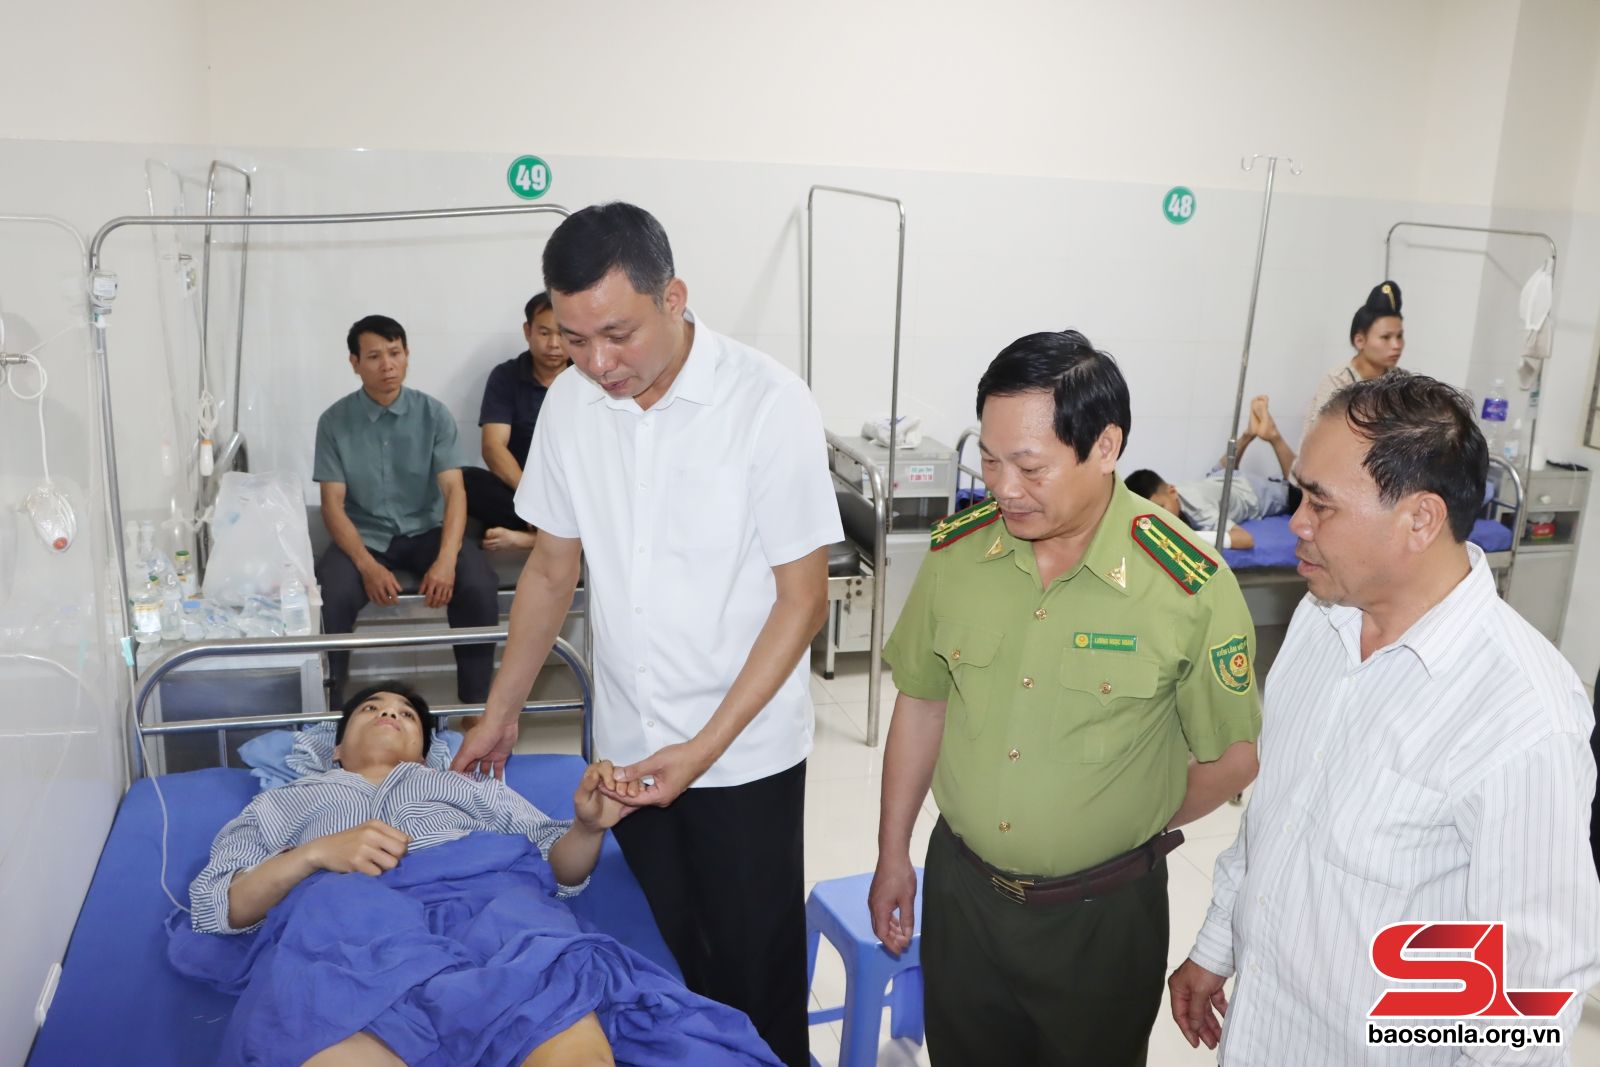   Đồng chí Nguyễn Thành Công, Phó Chủ tịch UBND tỉnh, đã đến thăm hỏi, động viên cán bộ kiểm lâm gặp tai nạn trong quá trình thực hiện nhiệm vụ chữa cháy rừng.